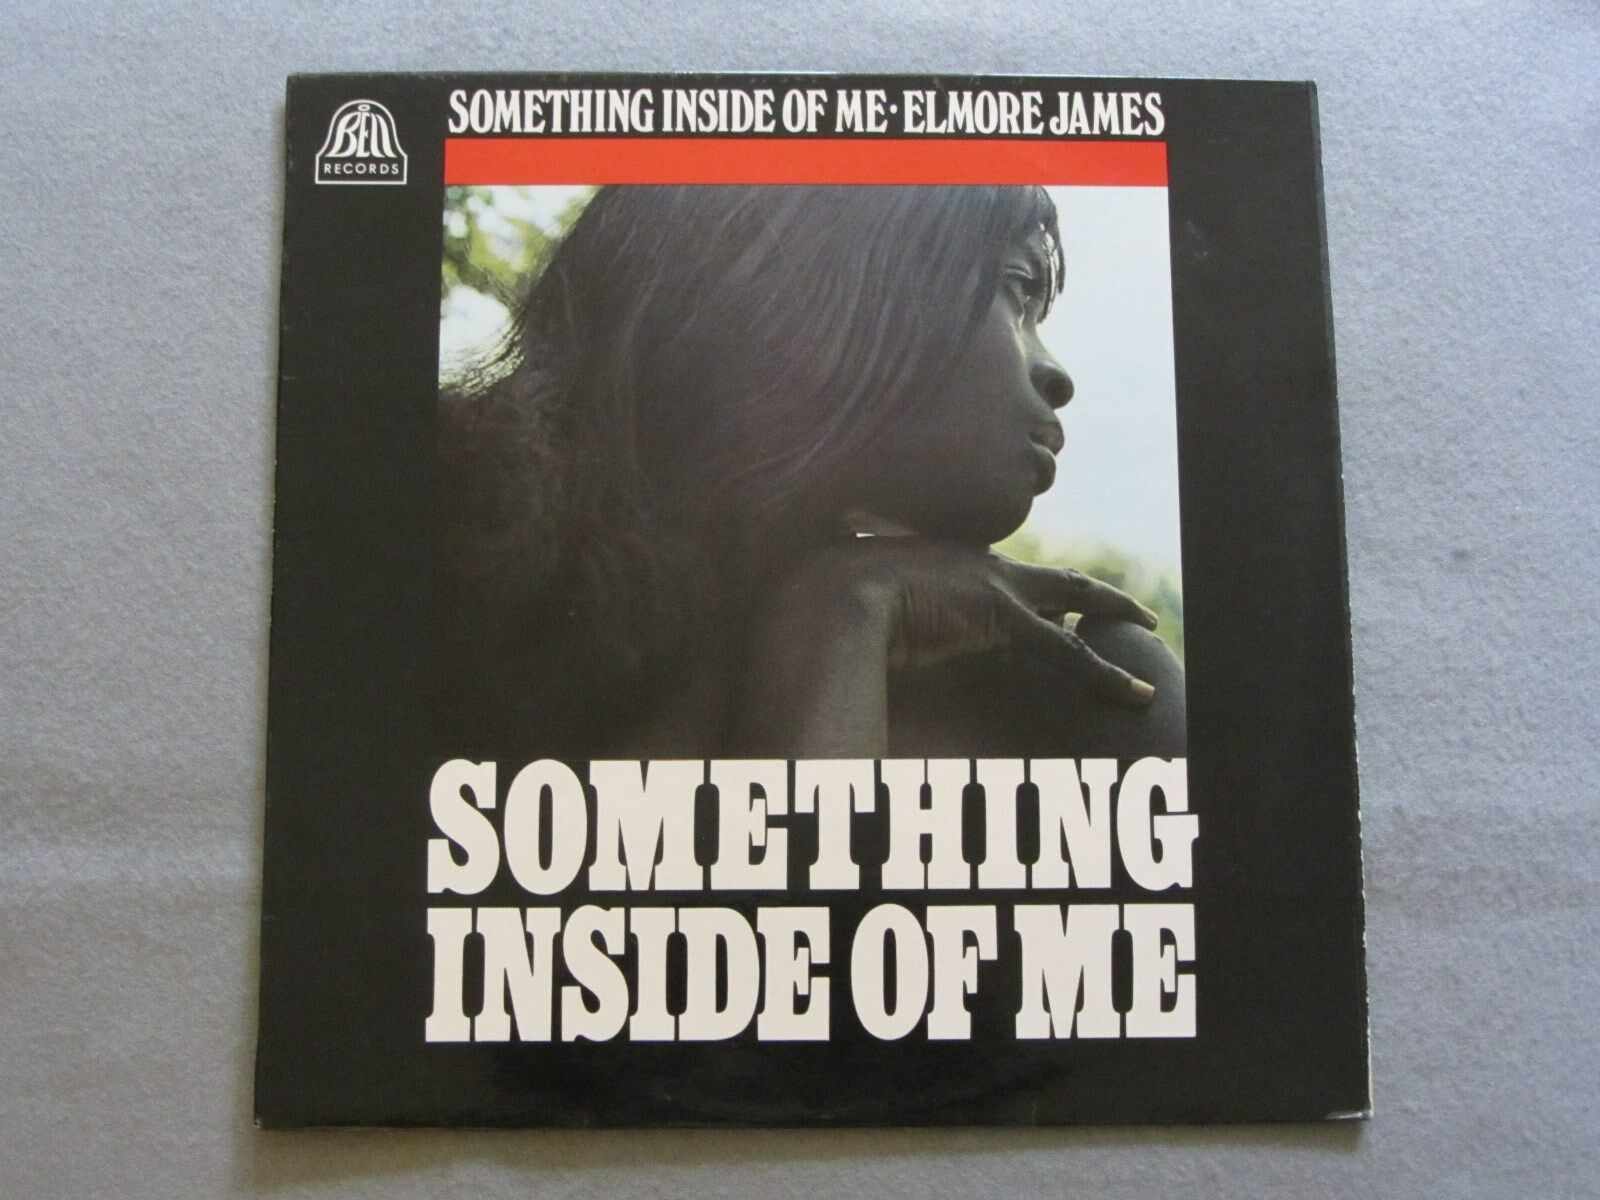 Elmore James – Something inside of me Vinyl LP (Bell 1968) EX+/EX+